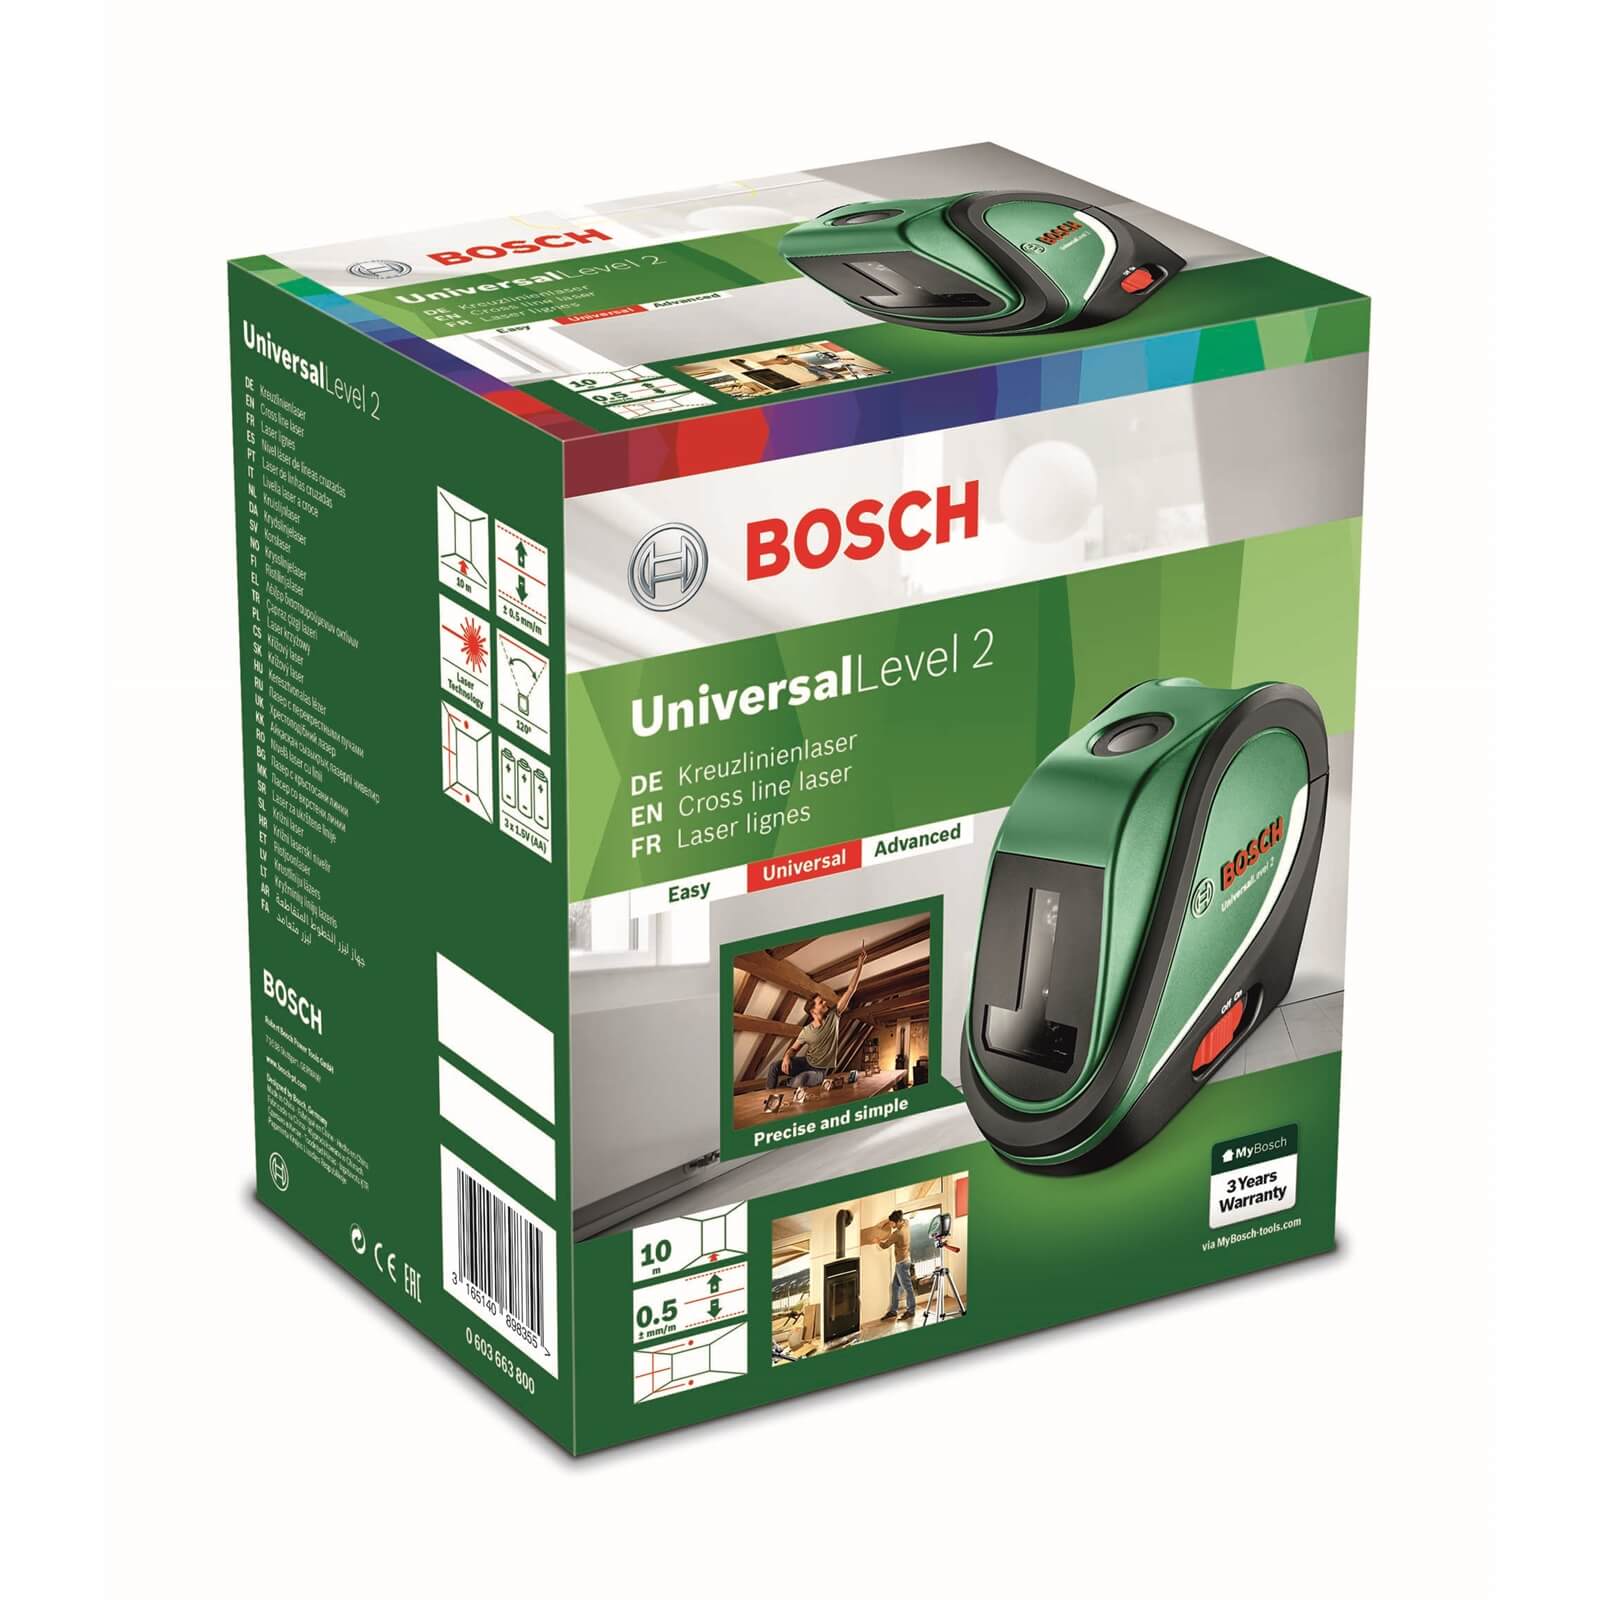 Bosch Universallevel 2 Laser Level Set